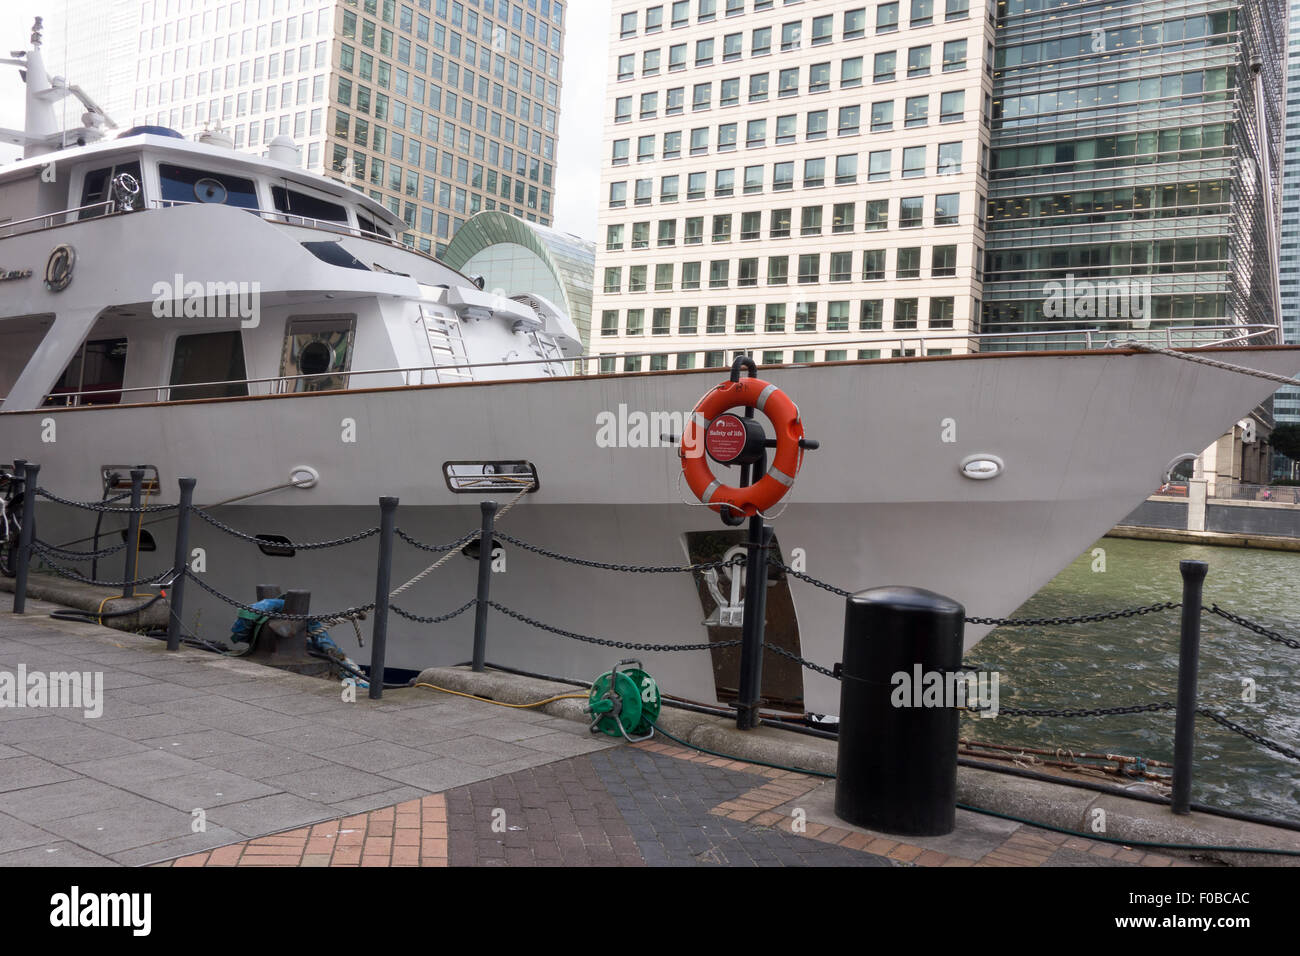 Un crucero blanco llamado "placer absoluto" está acoplado al lado de una boya en South Quay en Londres. Foto de stock